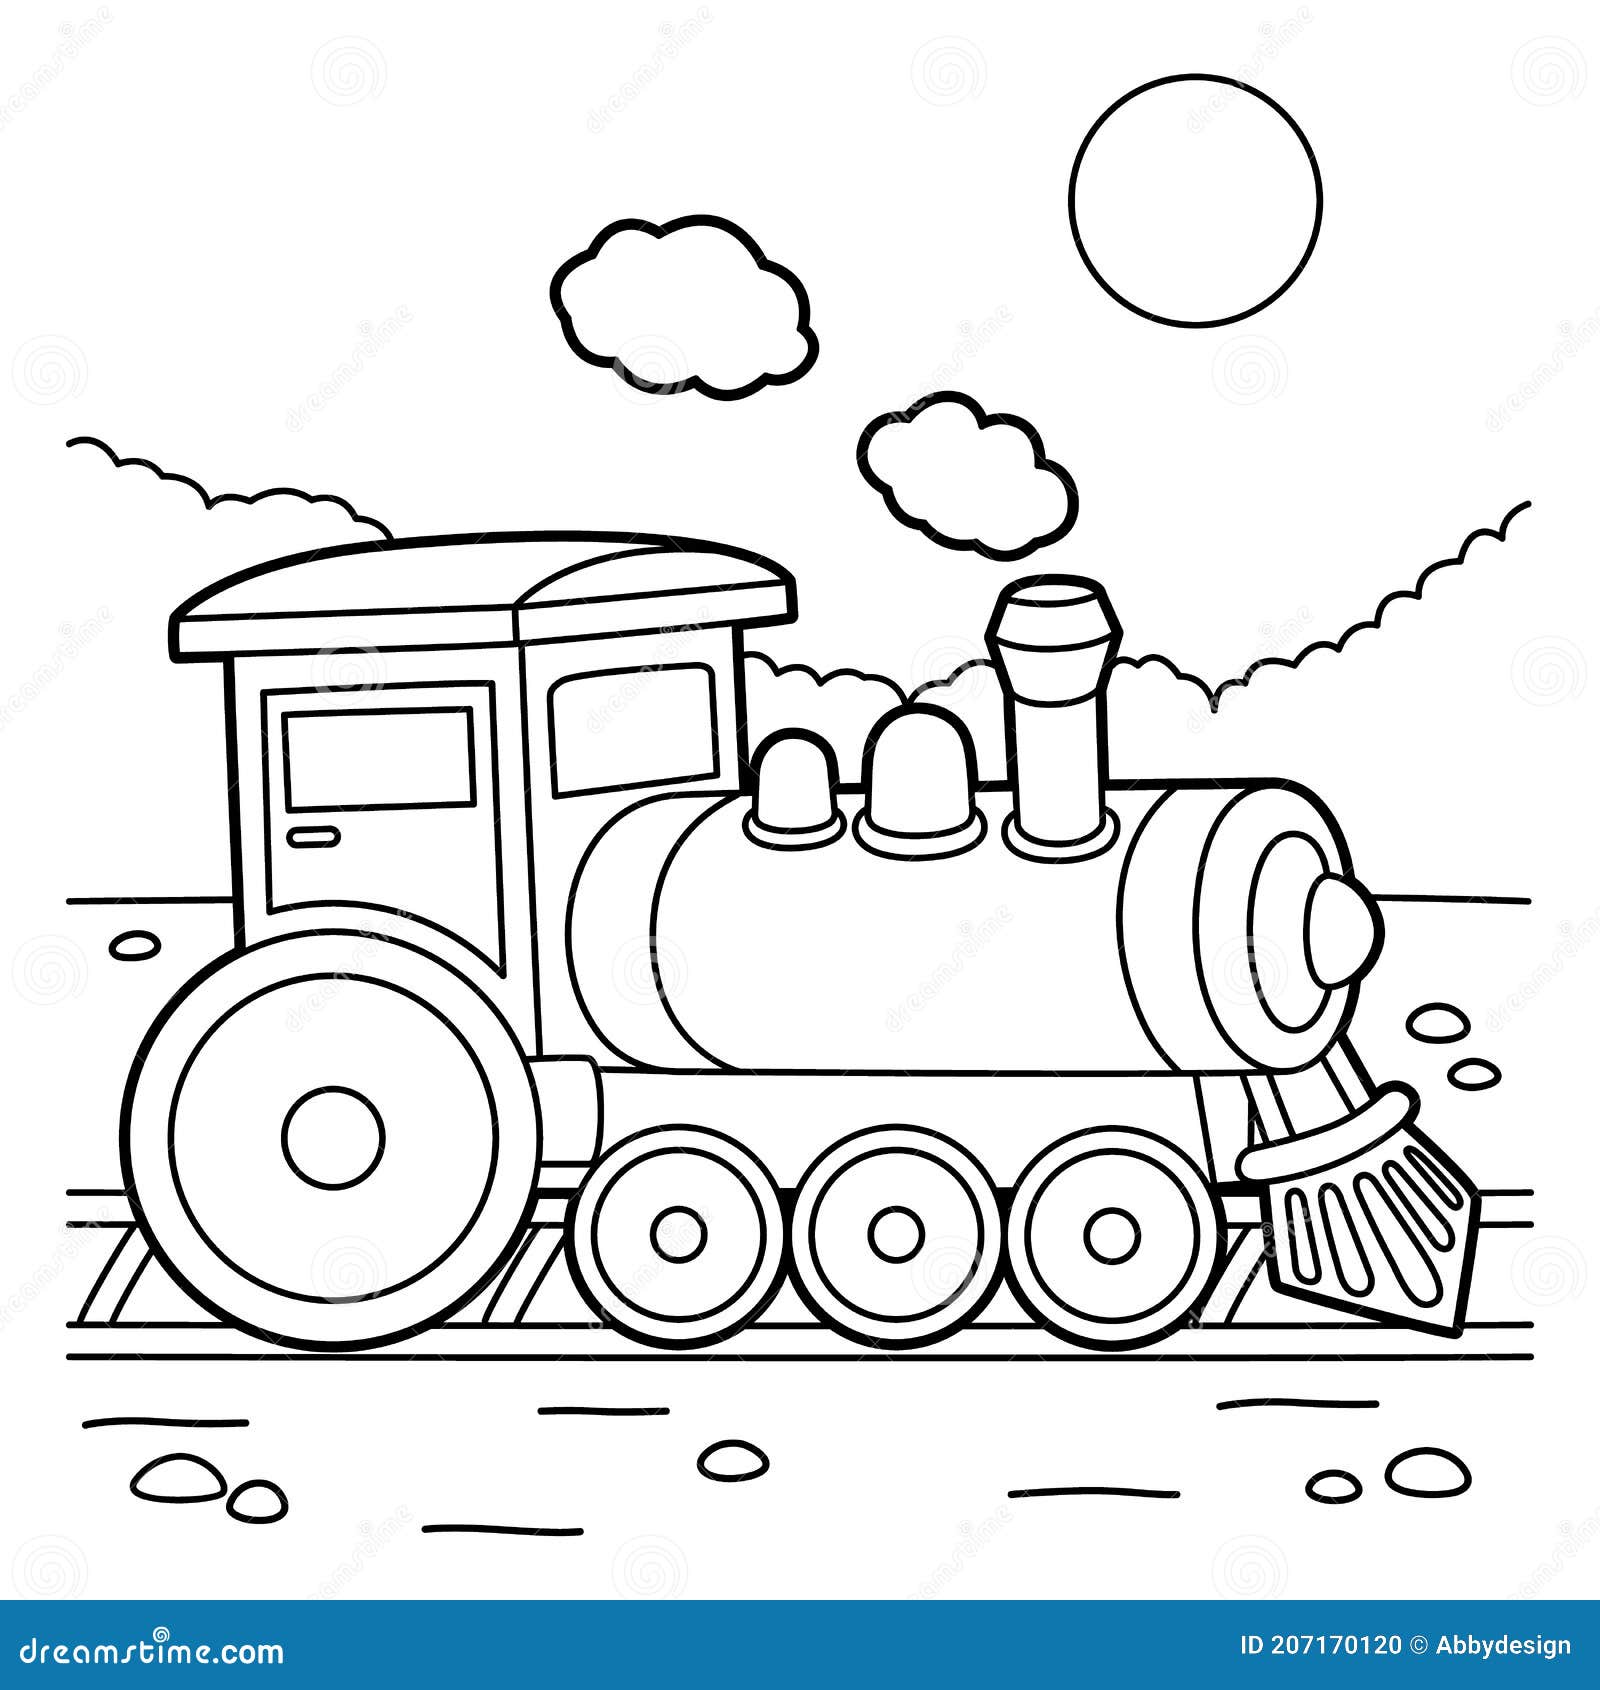 Página De Color De Locomotora De Vapor Stock de ilustración - Ilustración lindo, 207170120